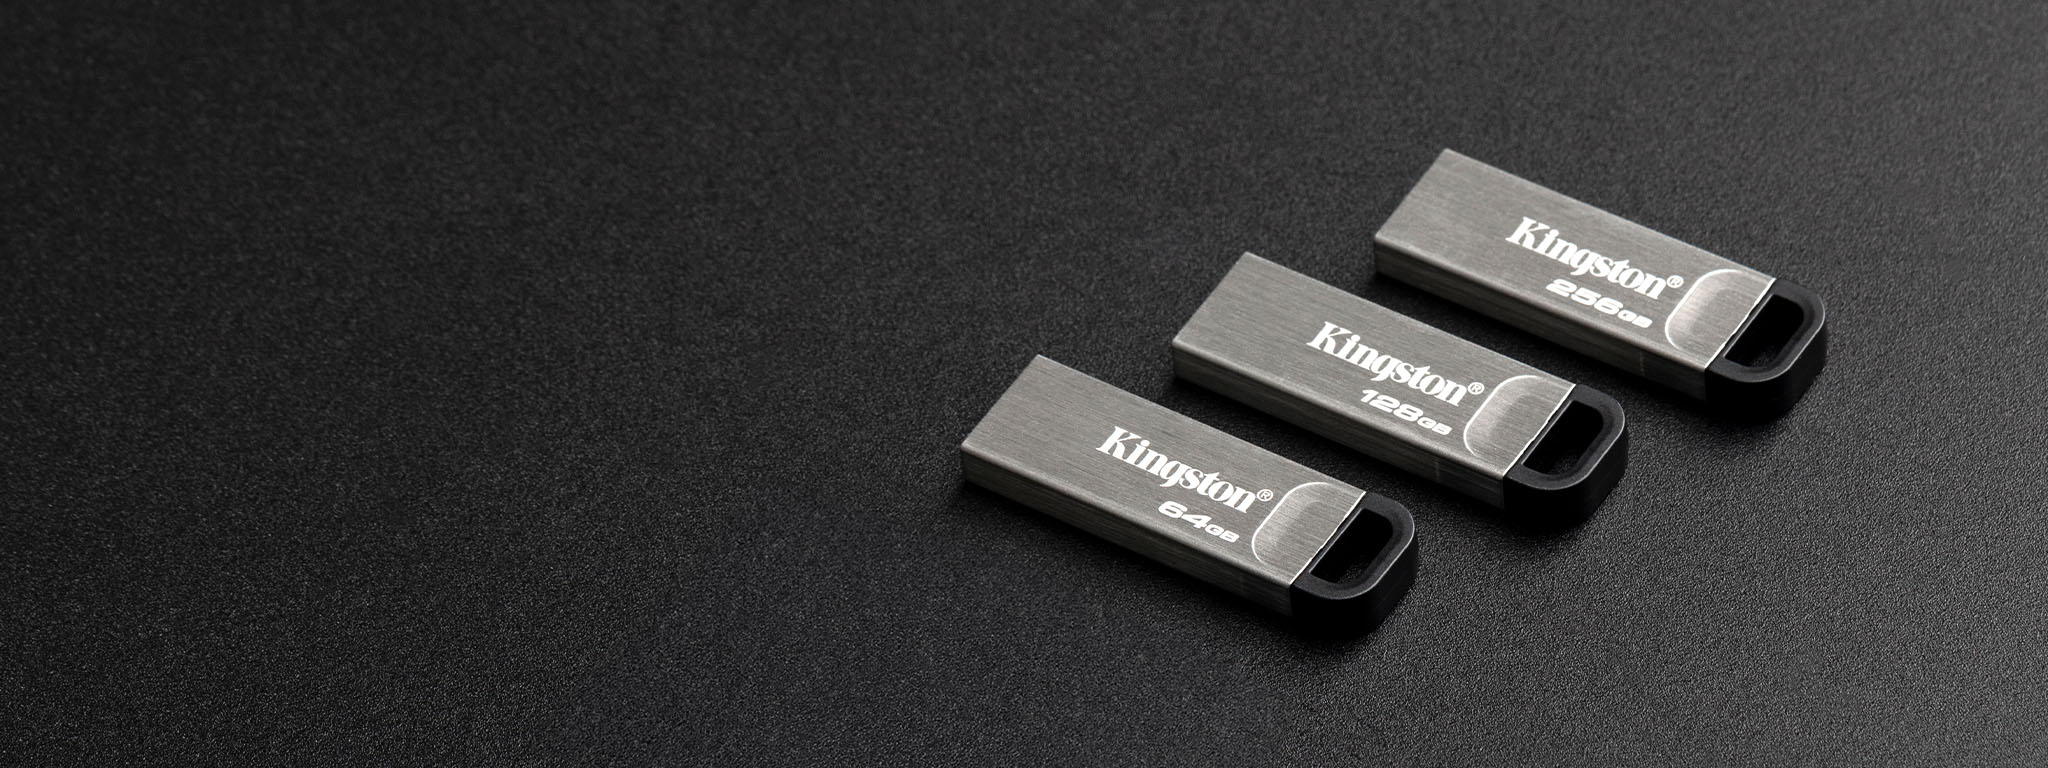 Vue de dessus de quatre clés USB DT Kyson de capacités différentes posées sur une surface noire